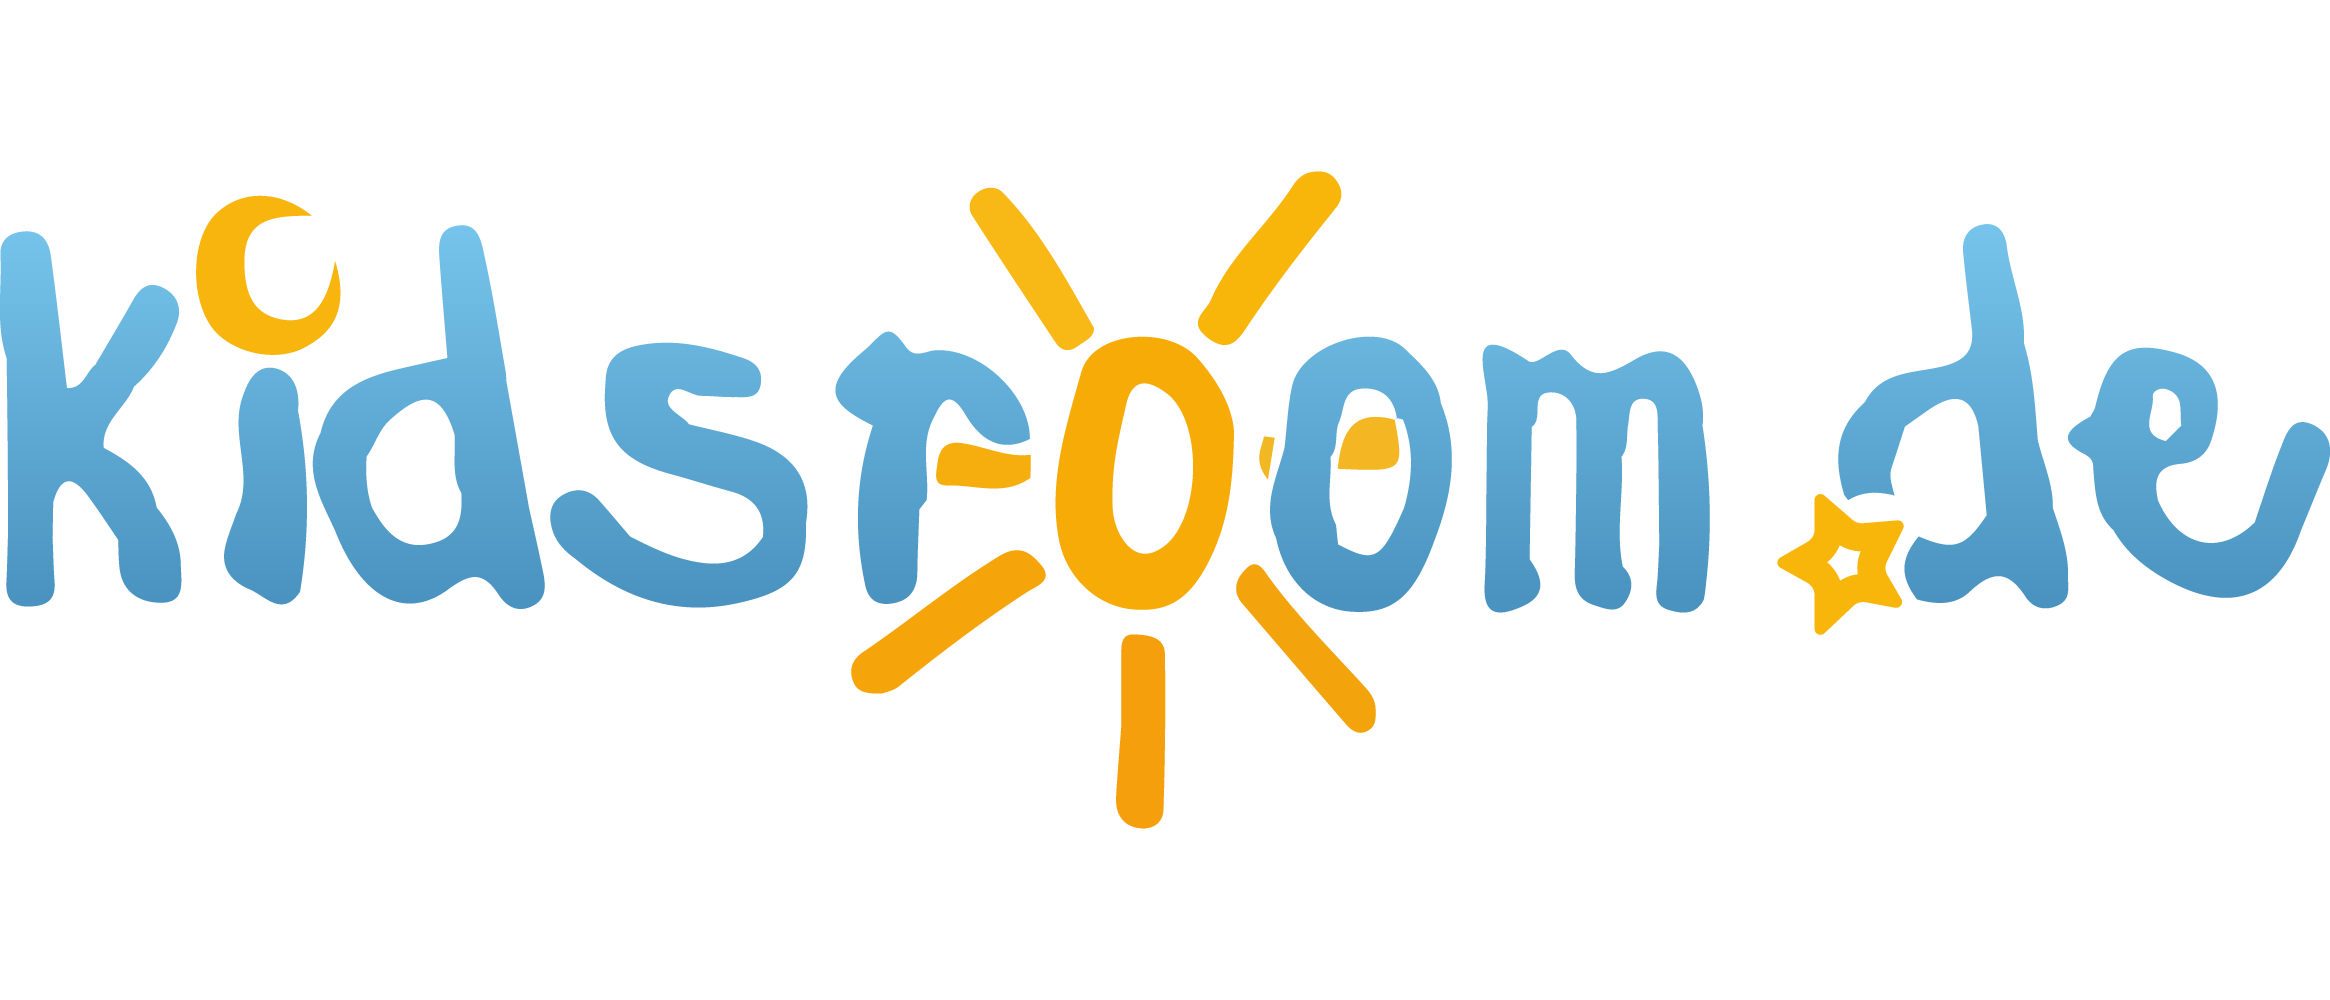 Kids-room.com